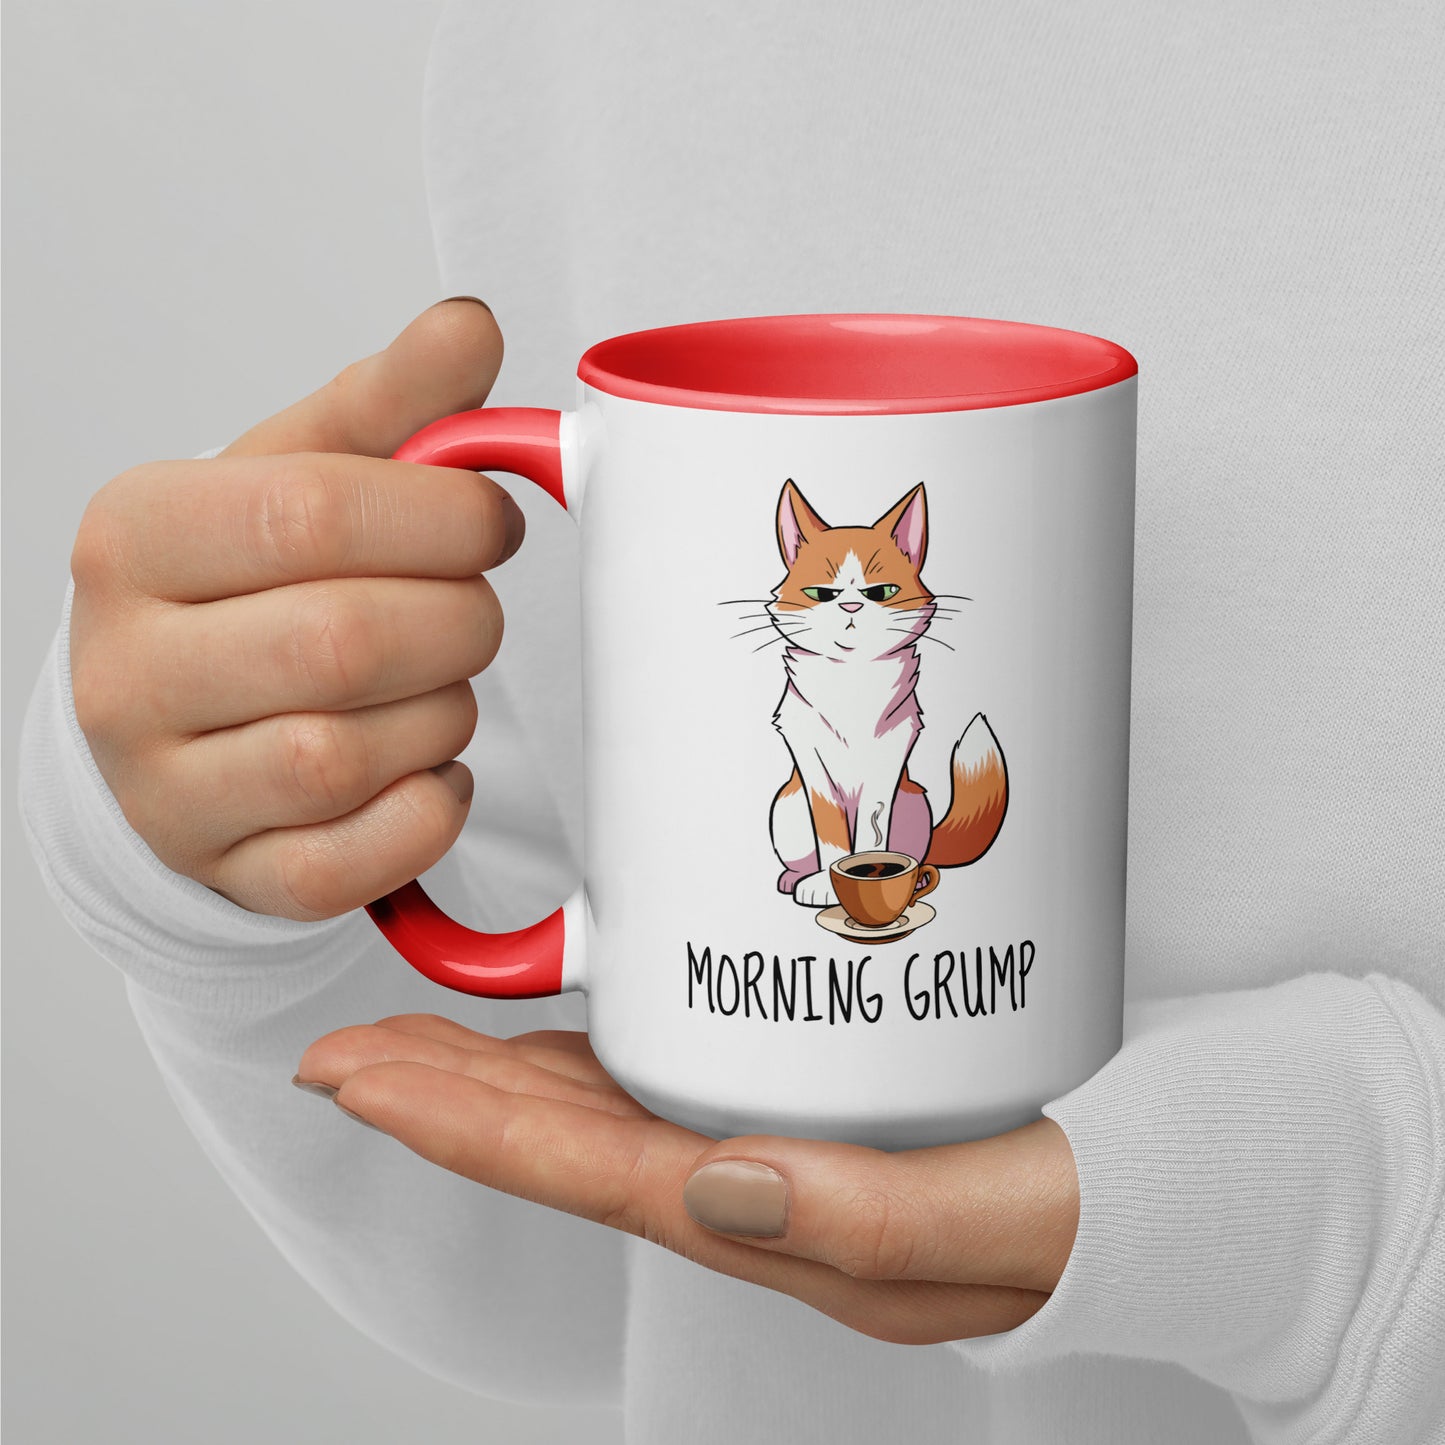 Morning Grump Coffee Cup!